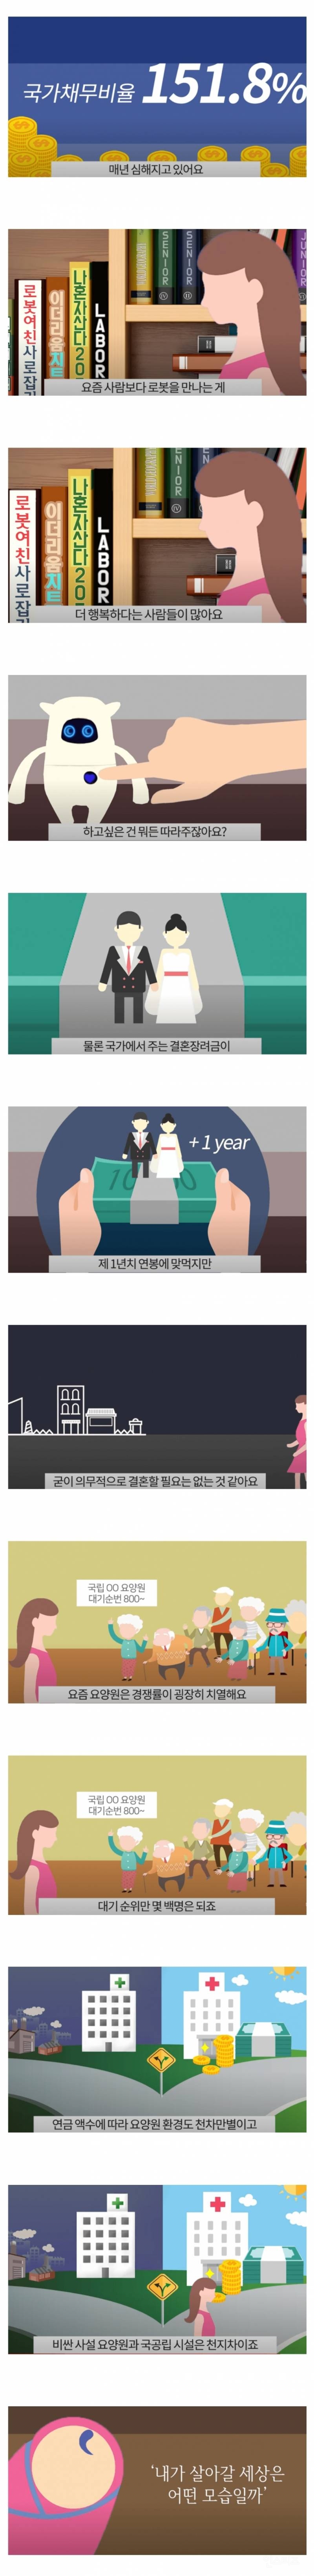 지금 태어나는 세대가 겪을 한국의 미래.jpg | 인스티즈